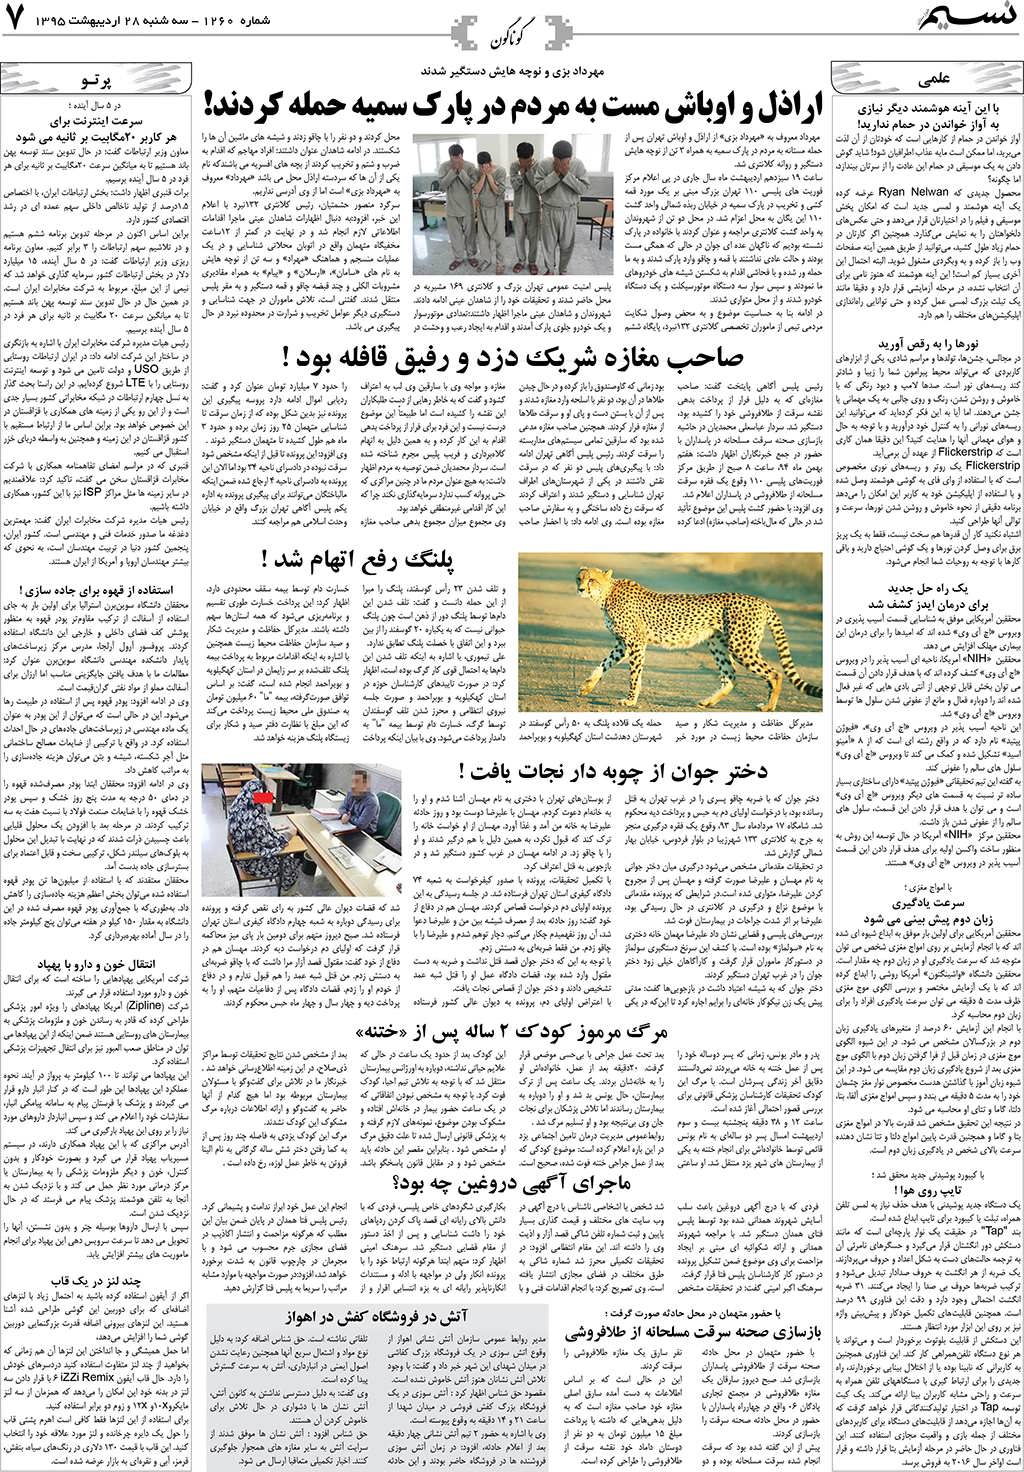 صفحه گوناگون روزنامه نسیم شماره 1260